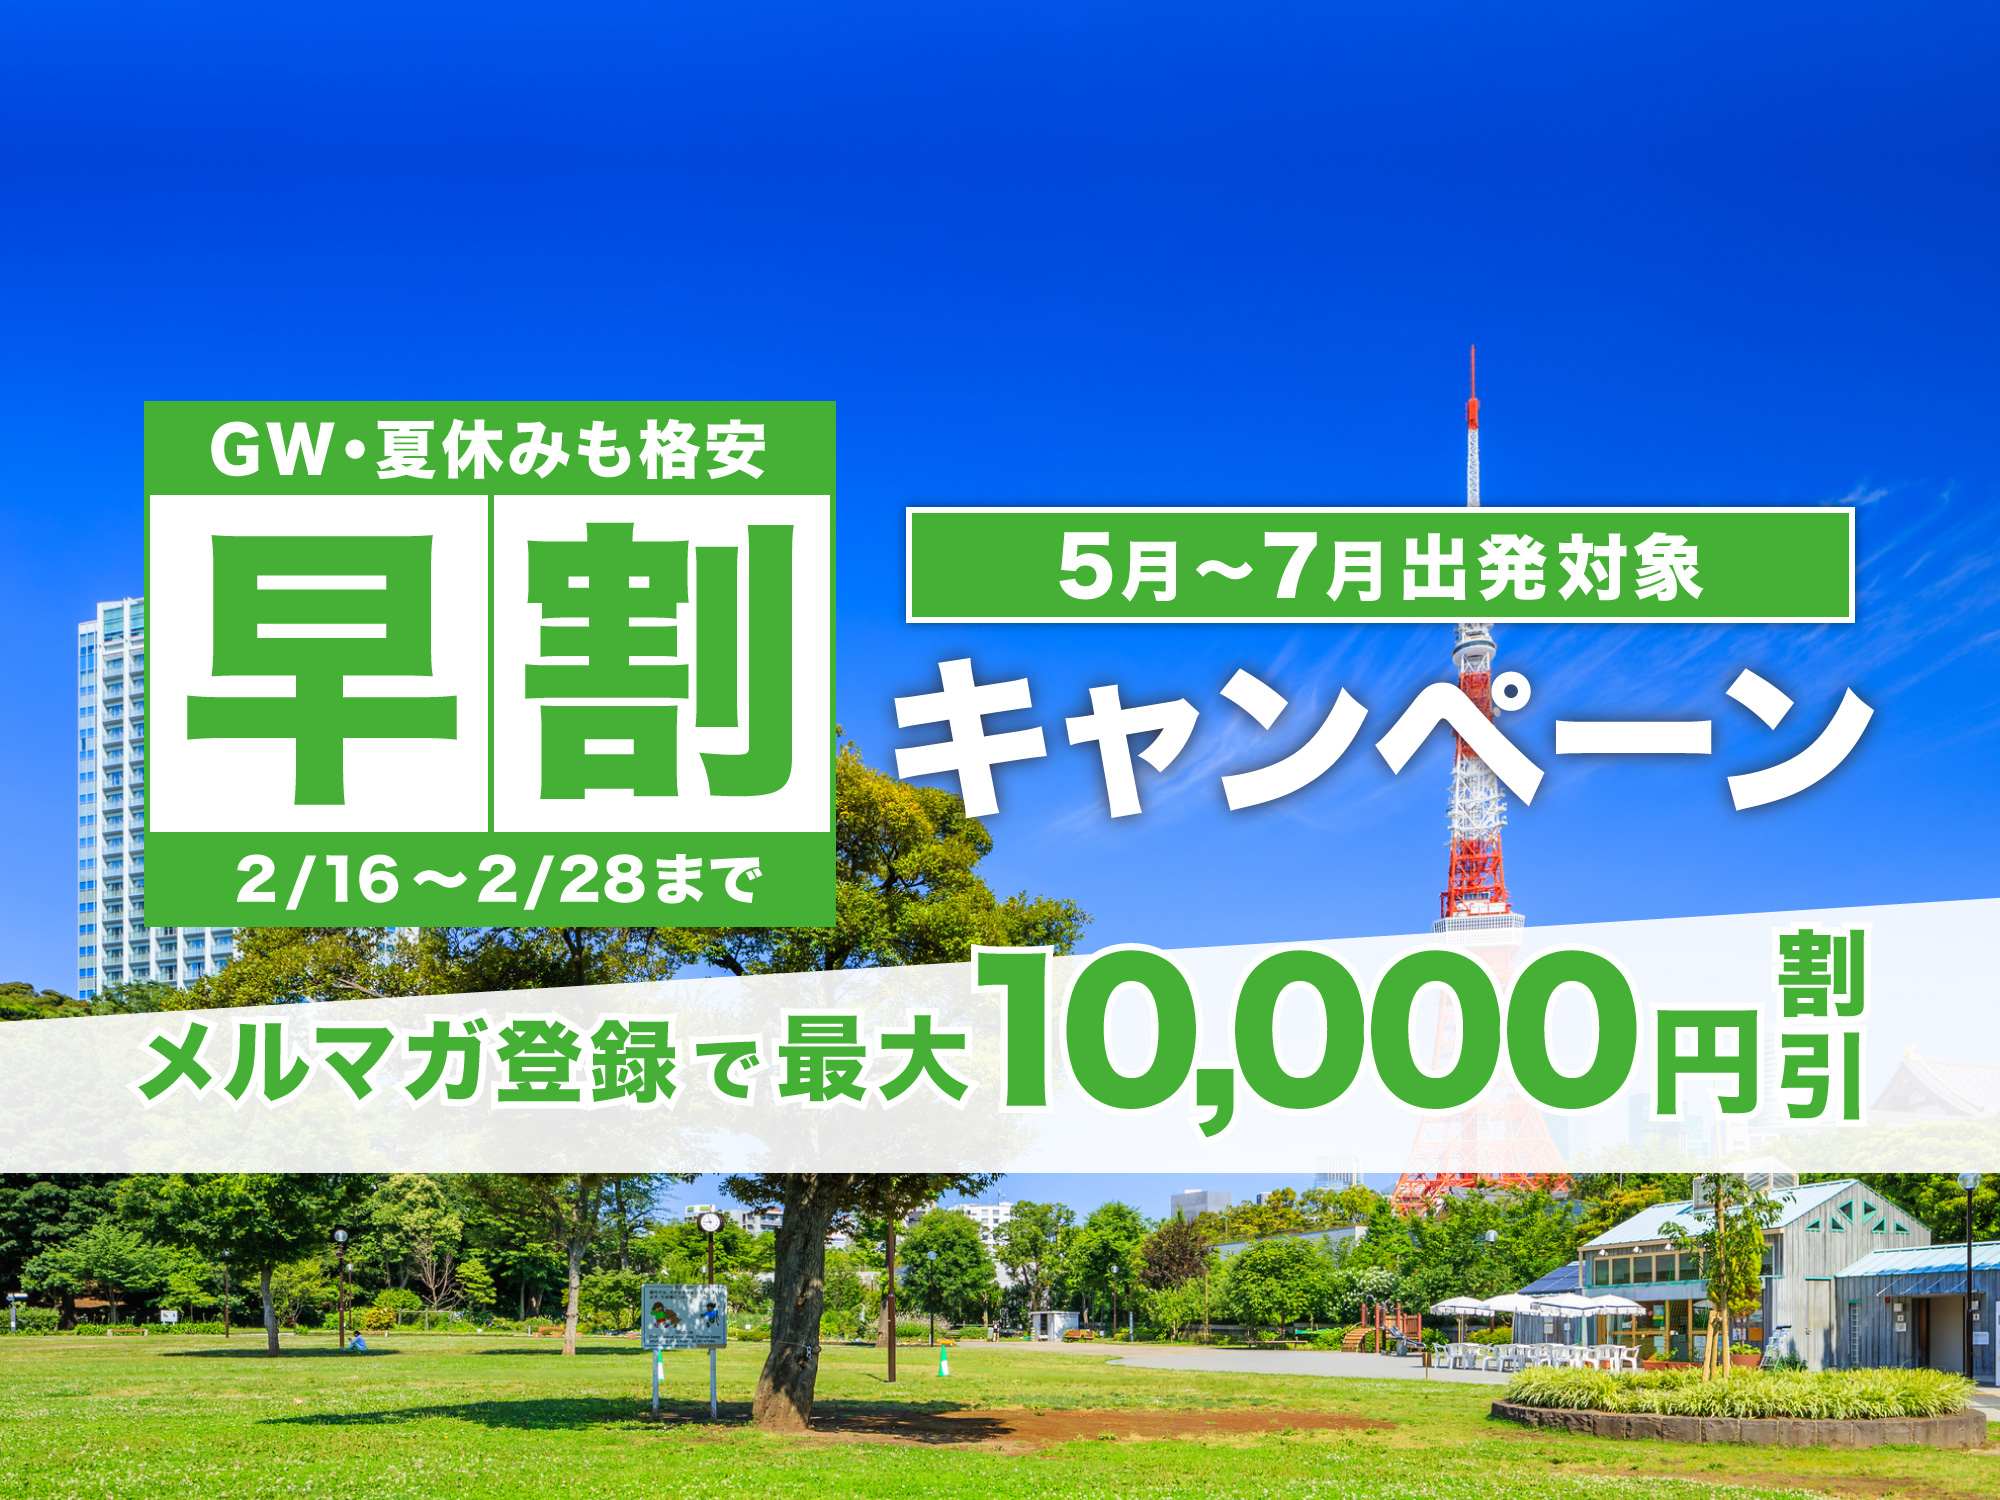 鹿児島発 東京ディズニーリゾート への旅行は格安パックツアーのj Trip